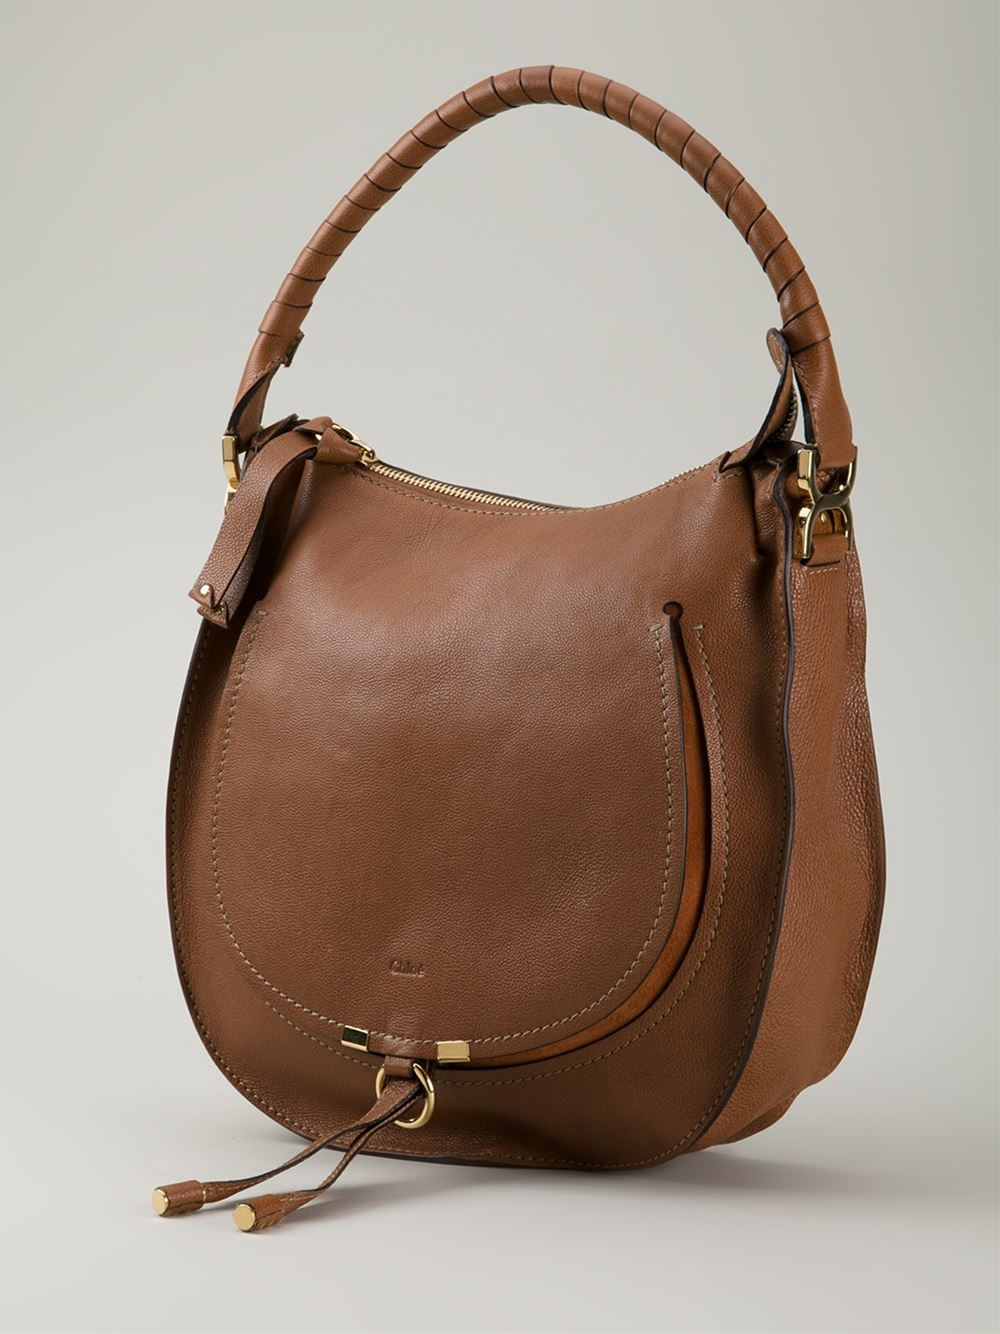 chloe-brown-marcie-hobo-bag-product-0-045069917-normal.jpeg